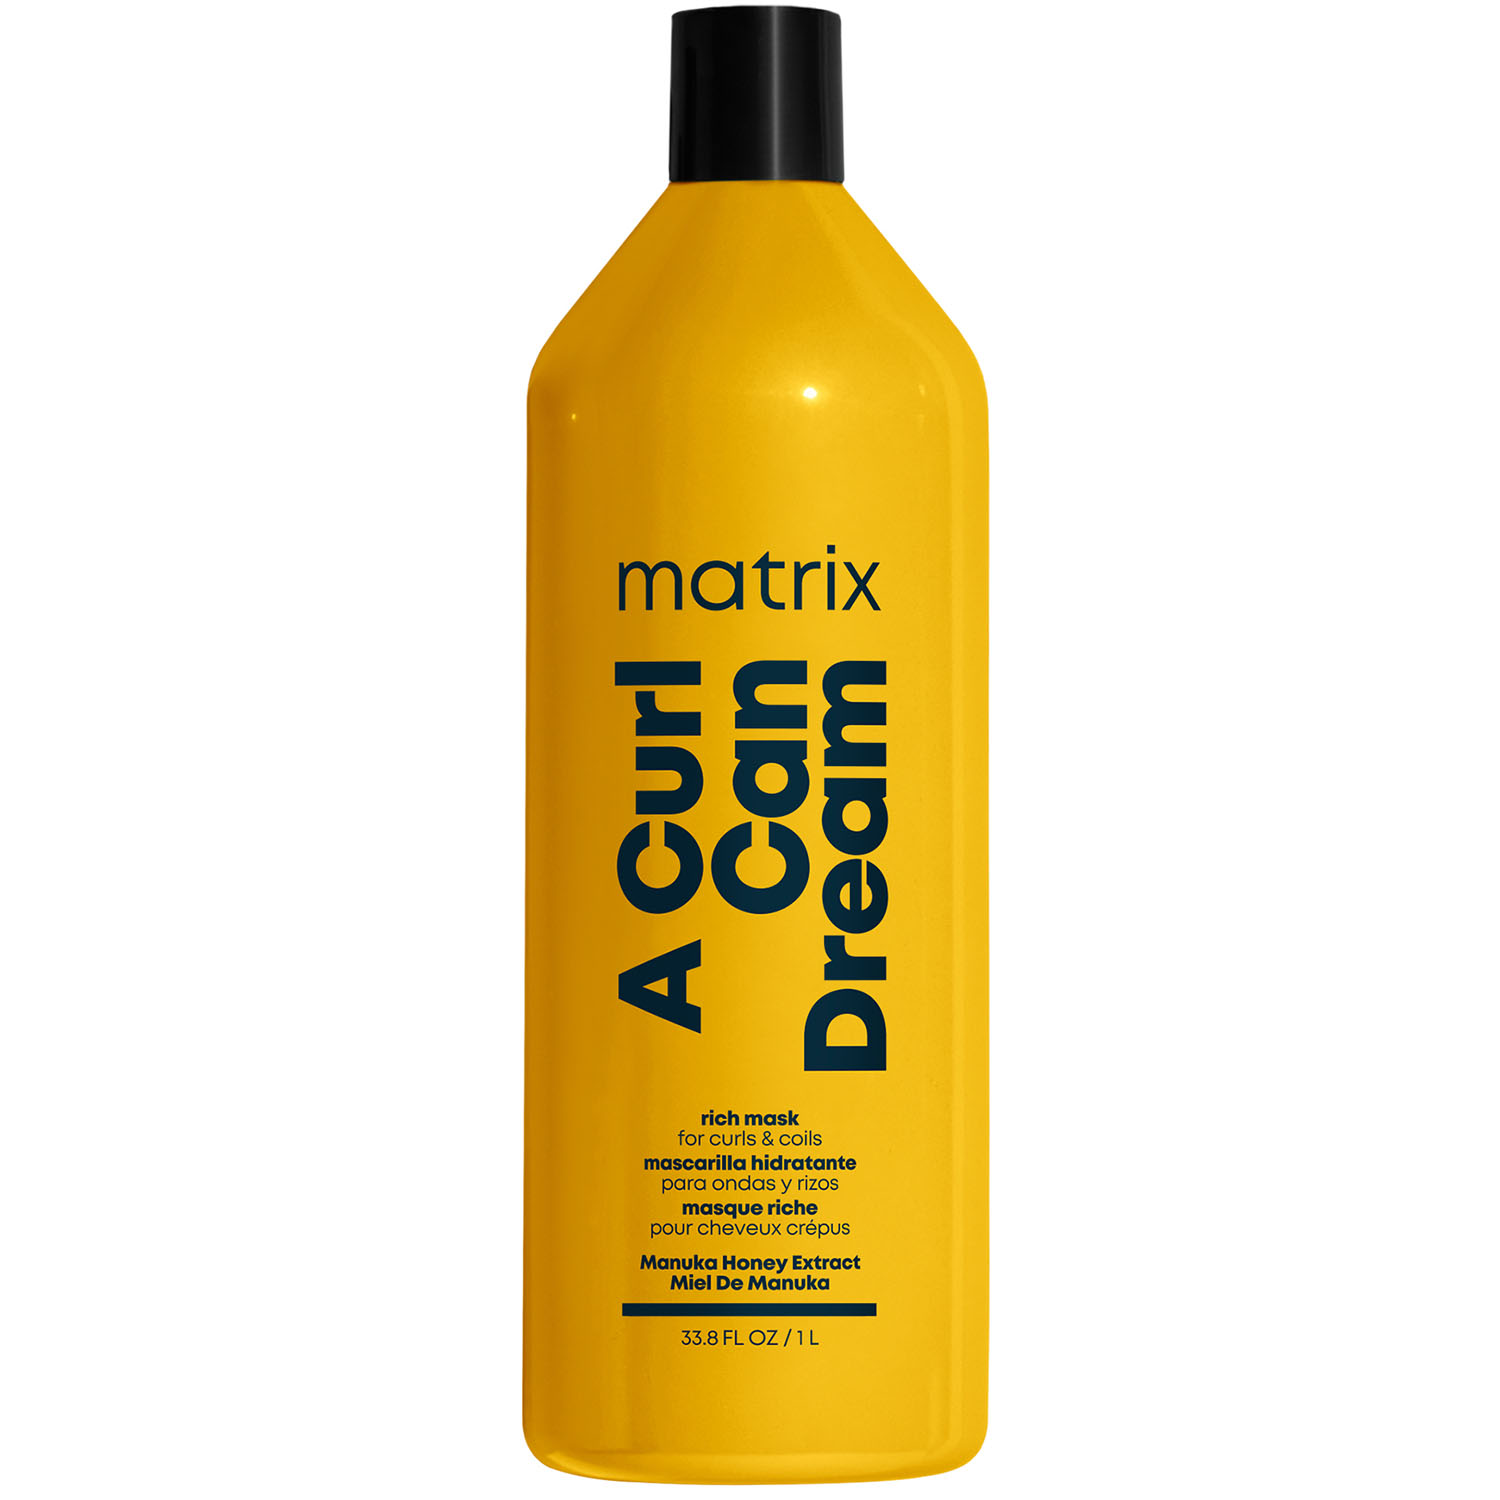 Matrix Маска с медом манука для интенсивного увлажнения кудрявых и вьющихся волос, 1000 мл (Matrix, Total results) matrix a curl can dream профессиональный гель легкой фиксации для кудрявых и вьющихся волос 250 мл